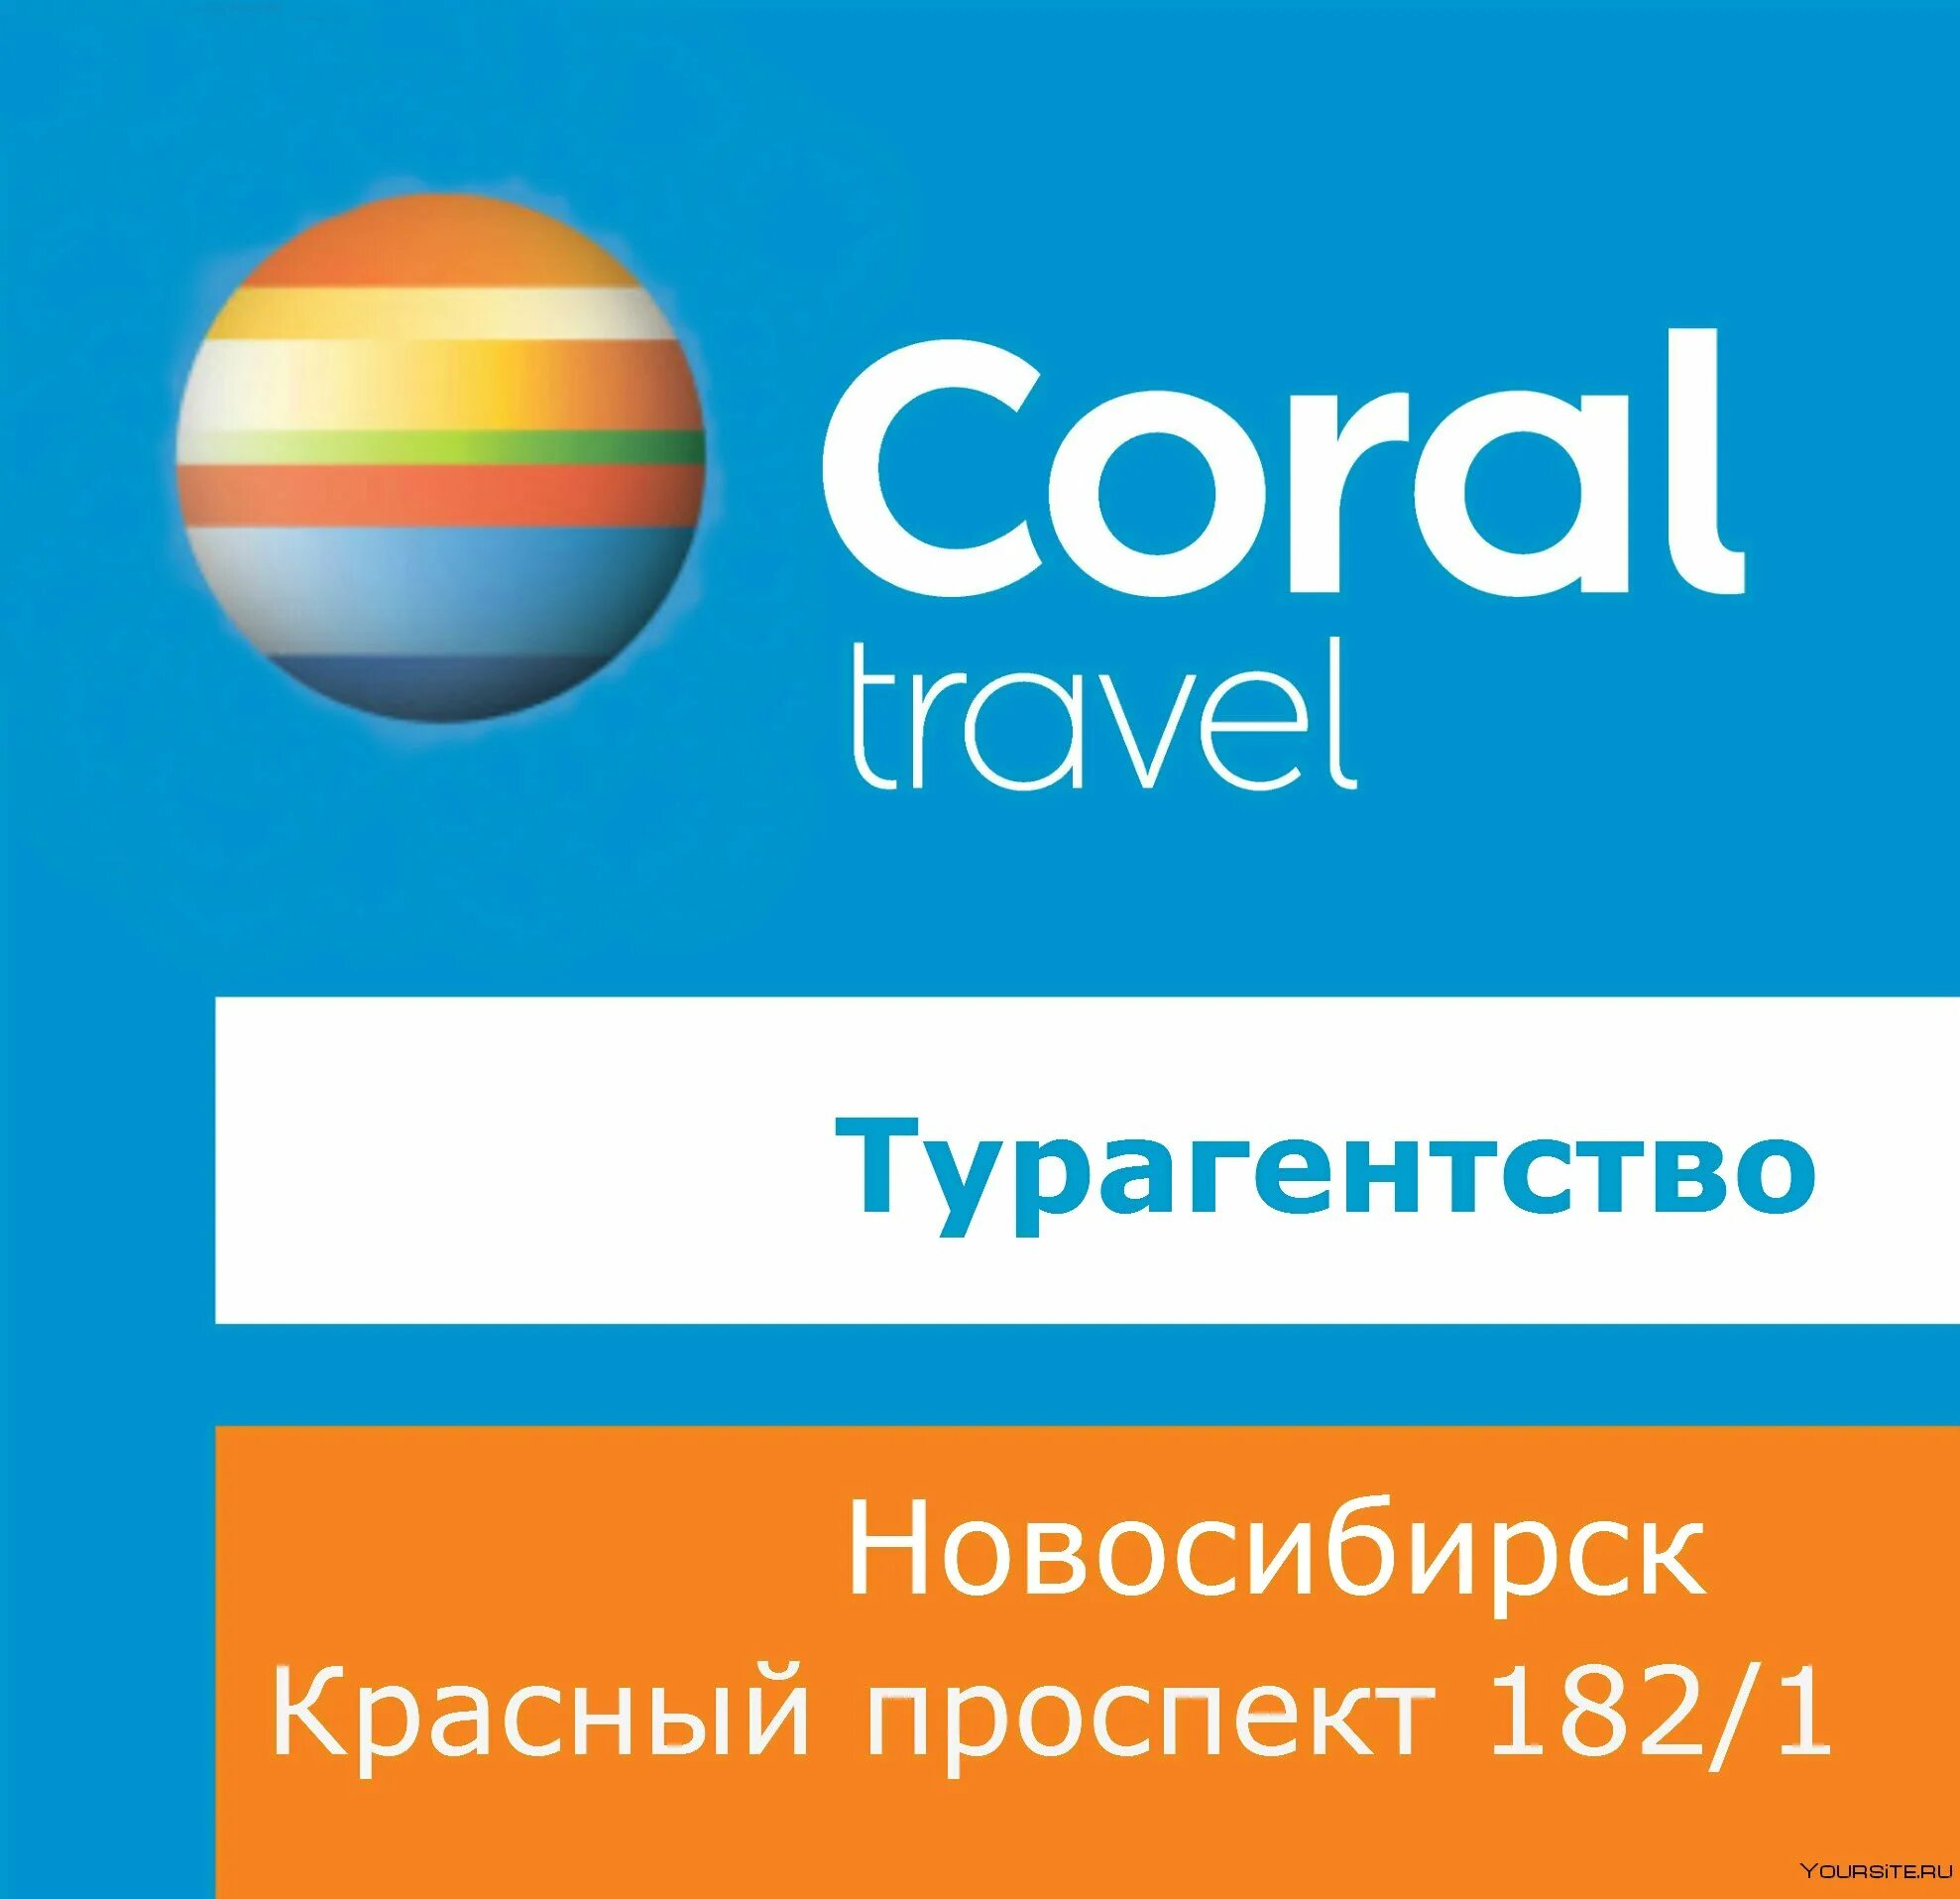 1 coral travel. Coral Travel логотип. Корал Тревел туроператор. Корал Тревел турагентство. Туристическое агентство Coral Travel.